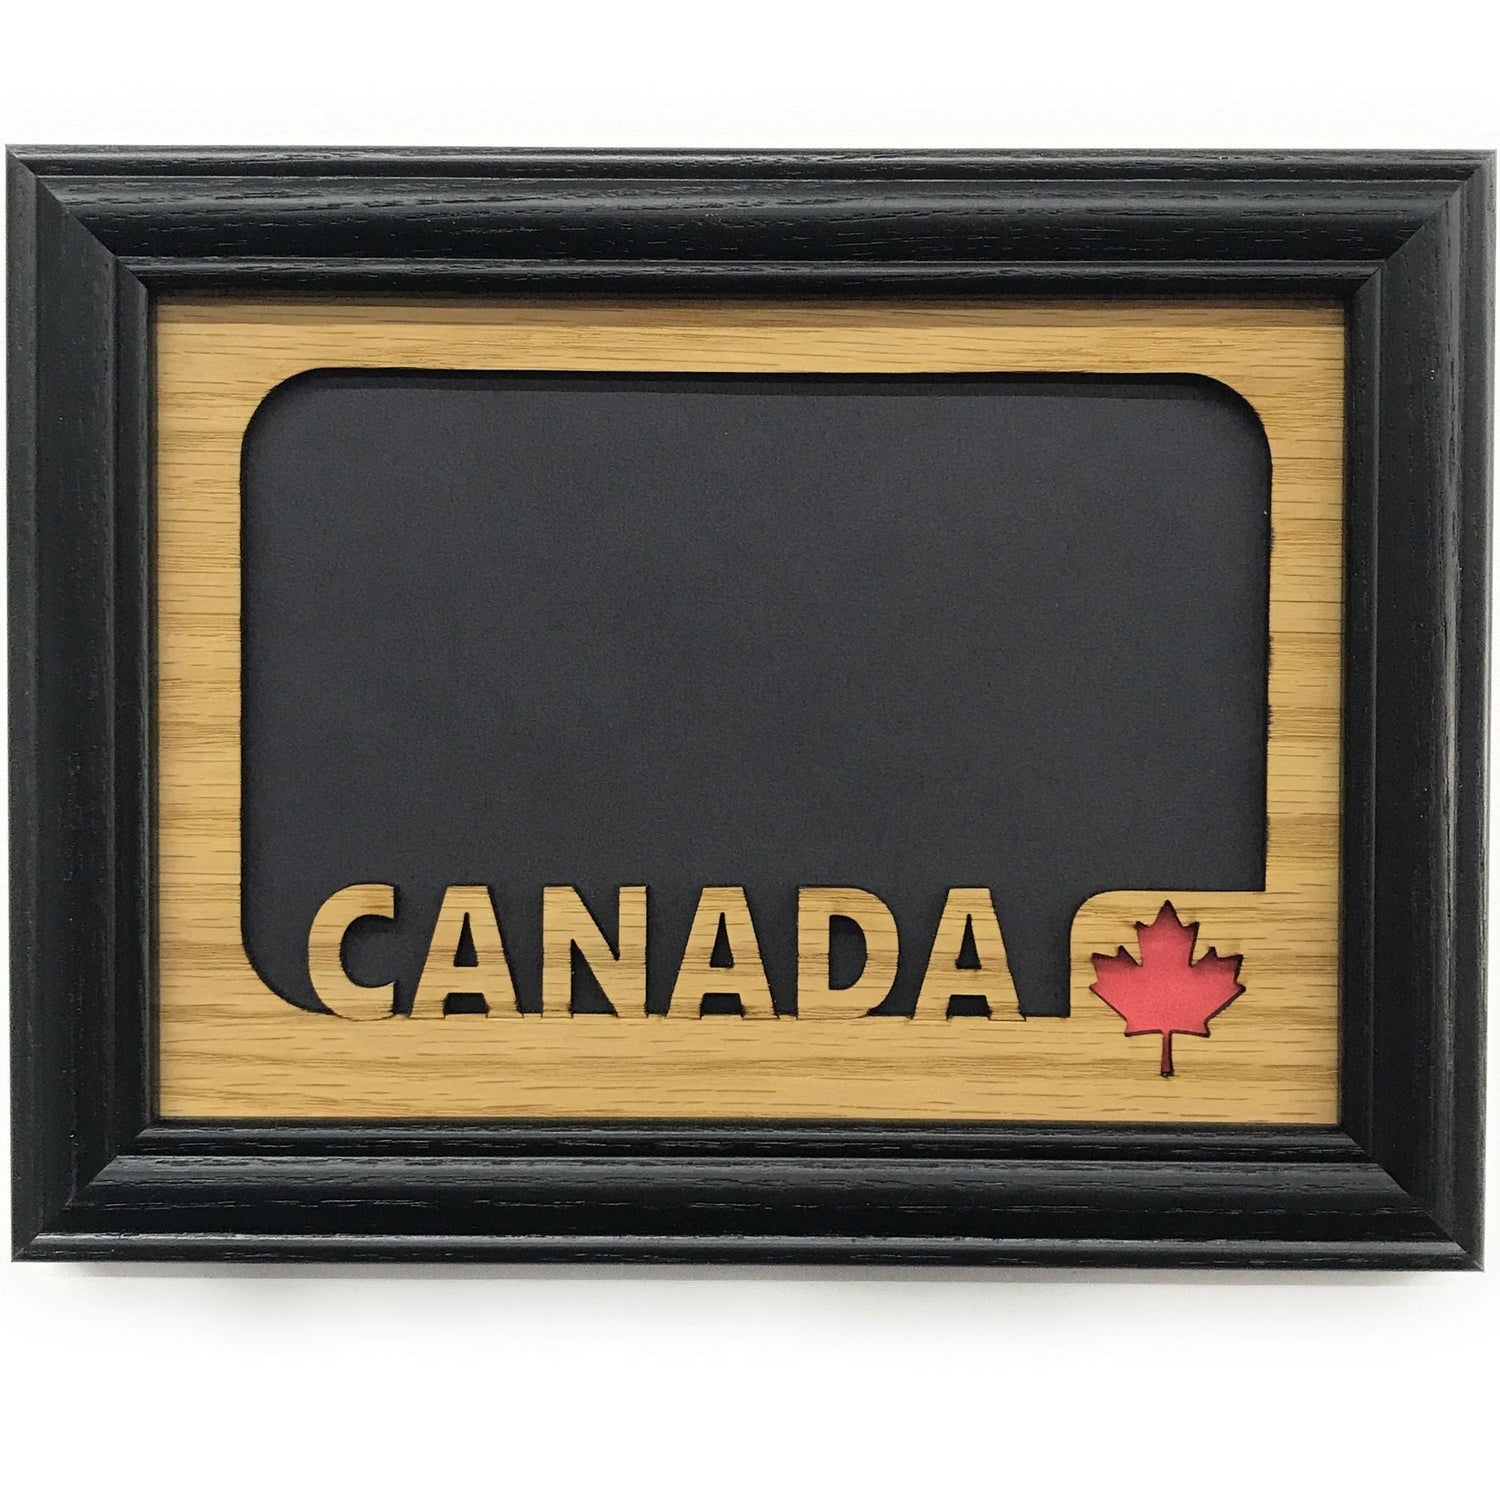 Canada Picture Frame - Canada Picture Frame - Legacy Images - Picture Frames - Legacy Images - Picture Frames